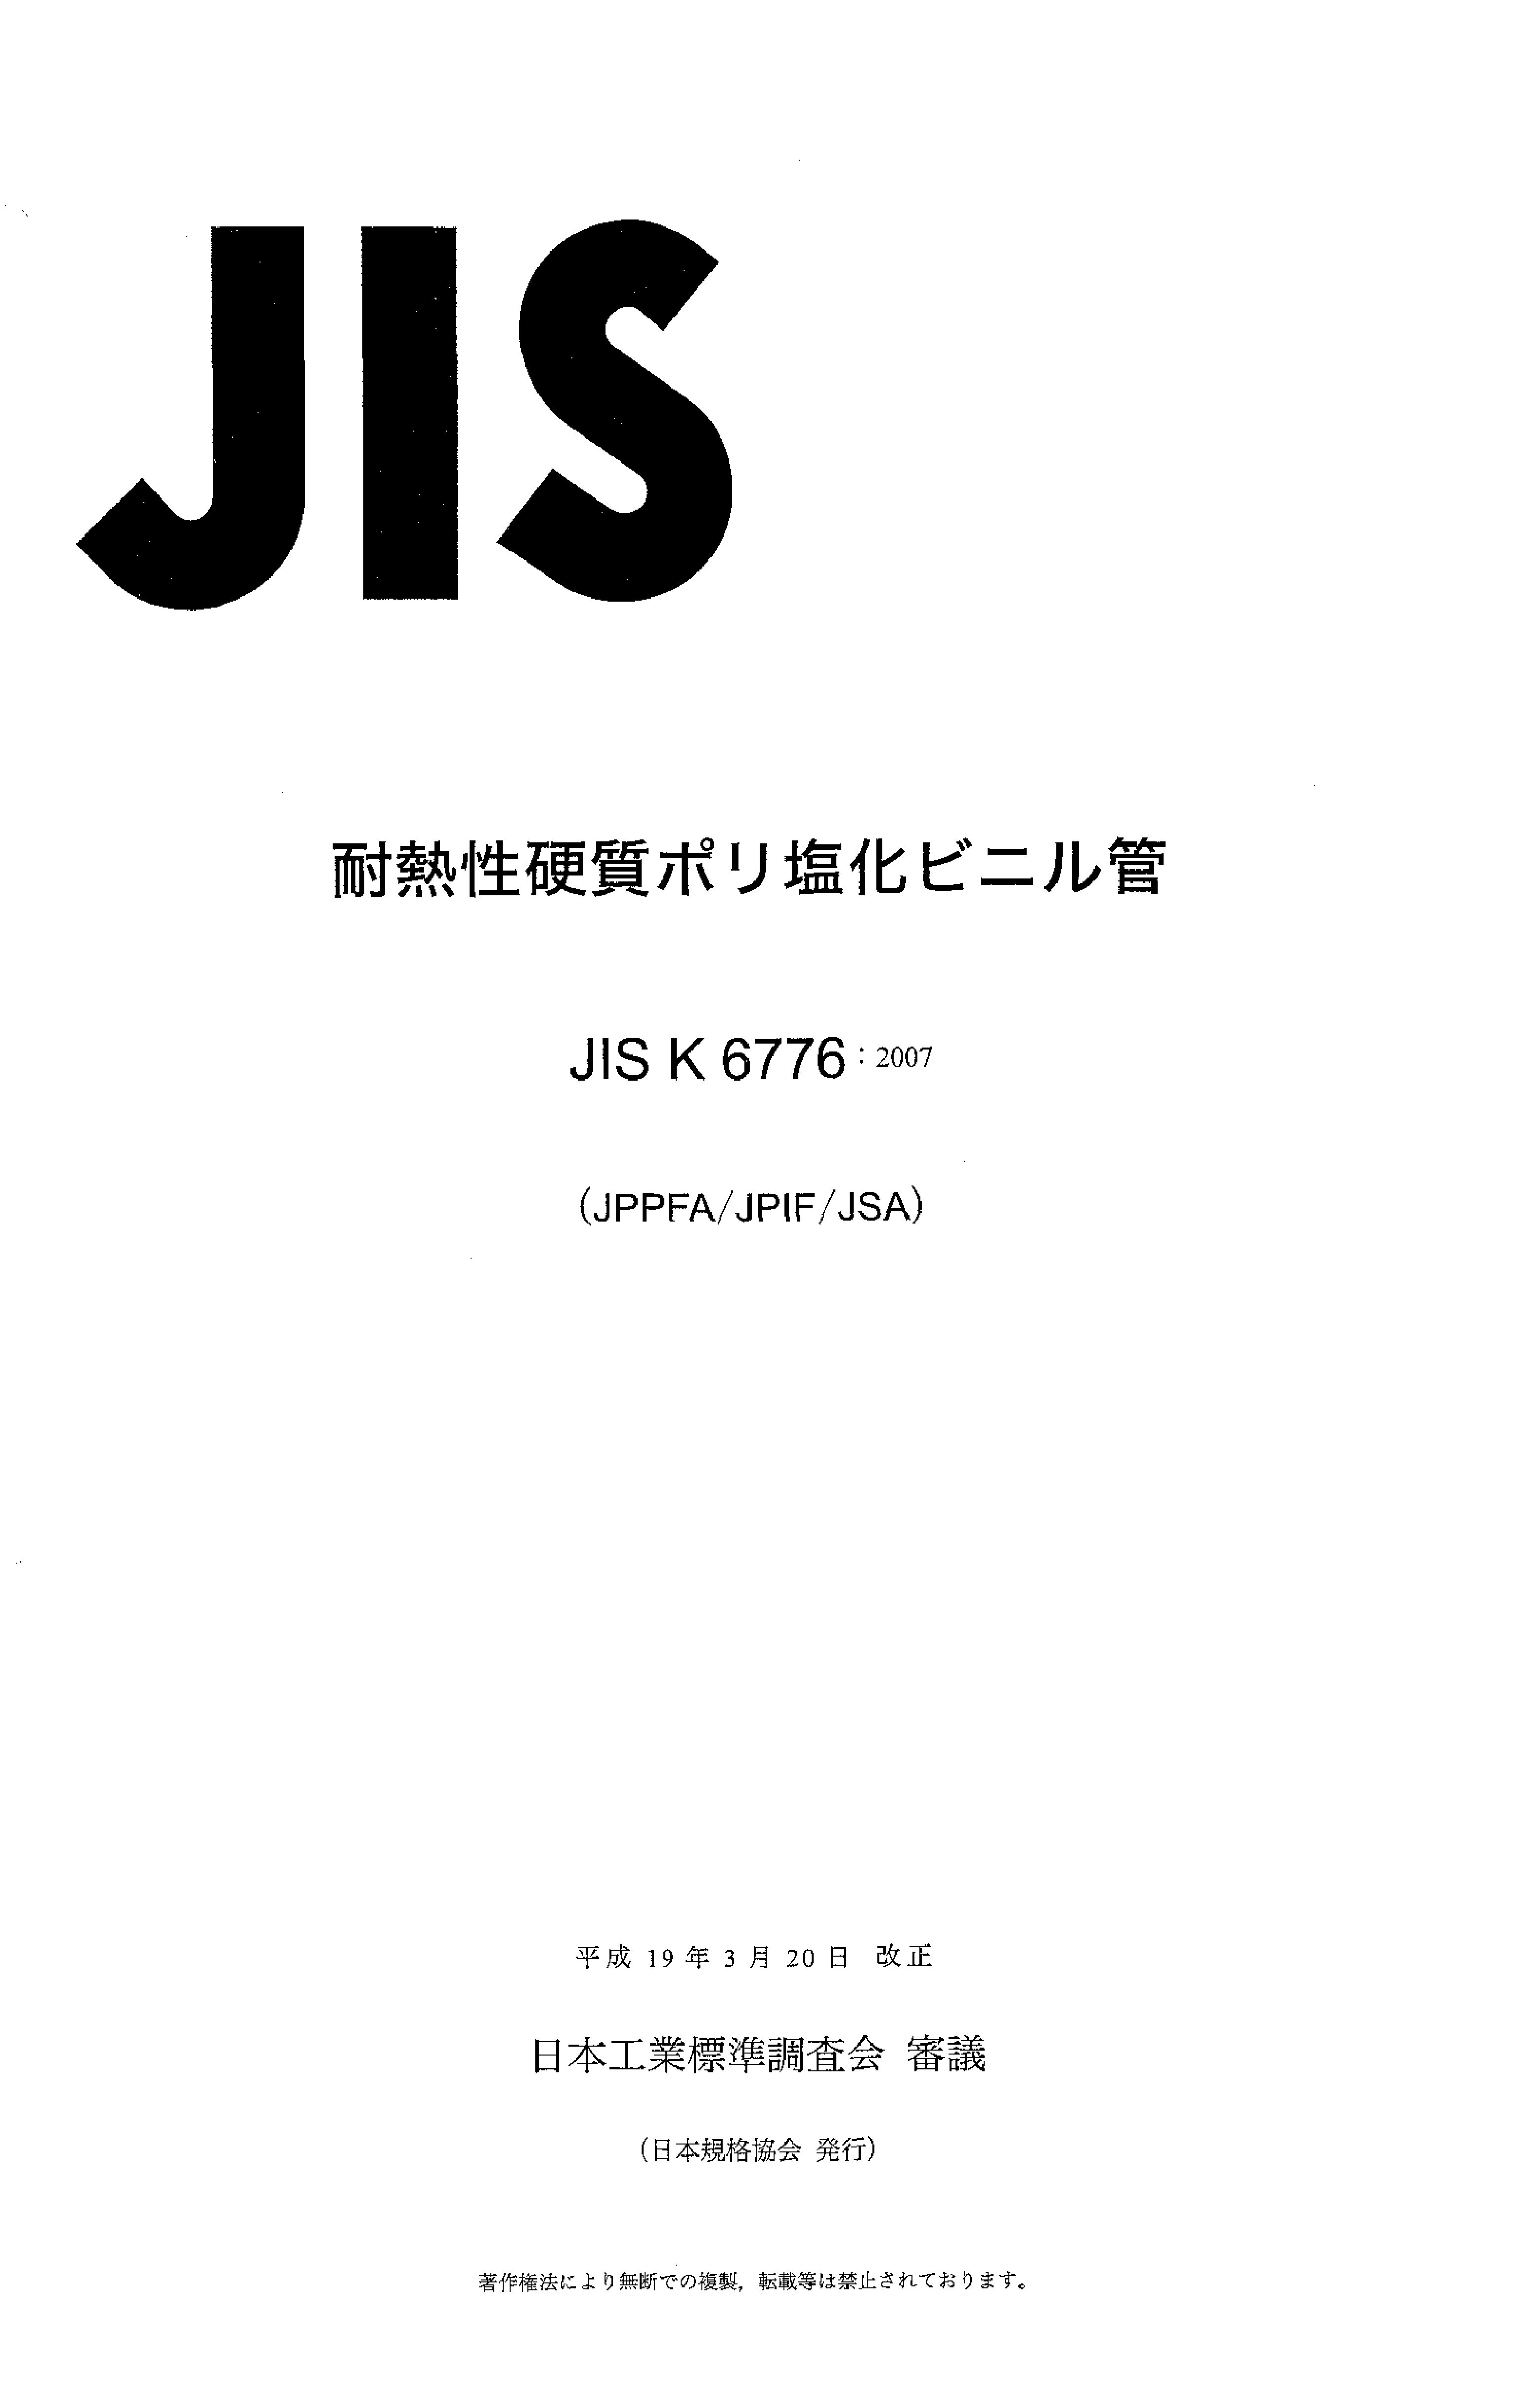 JIS K 6776:2007封面图